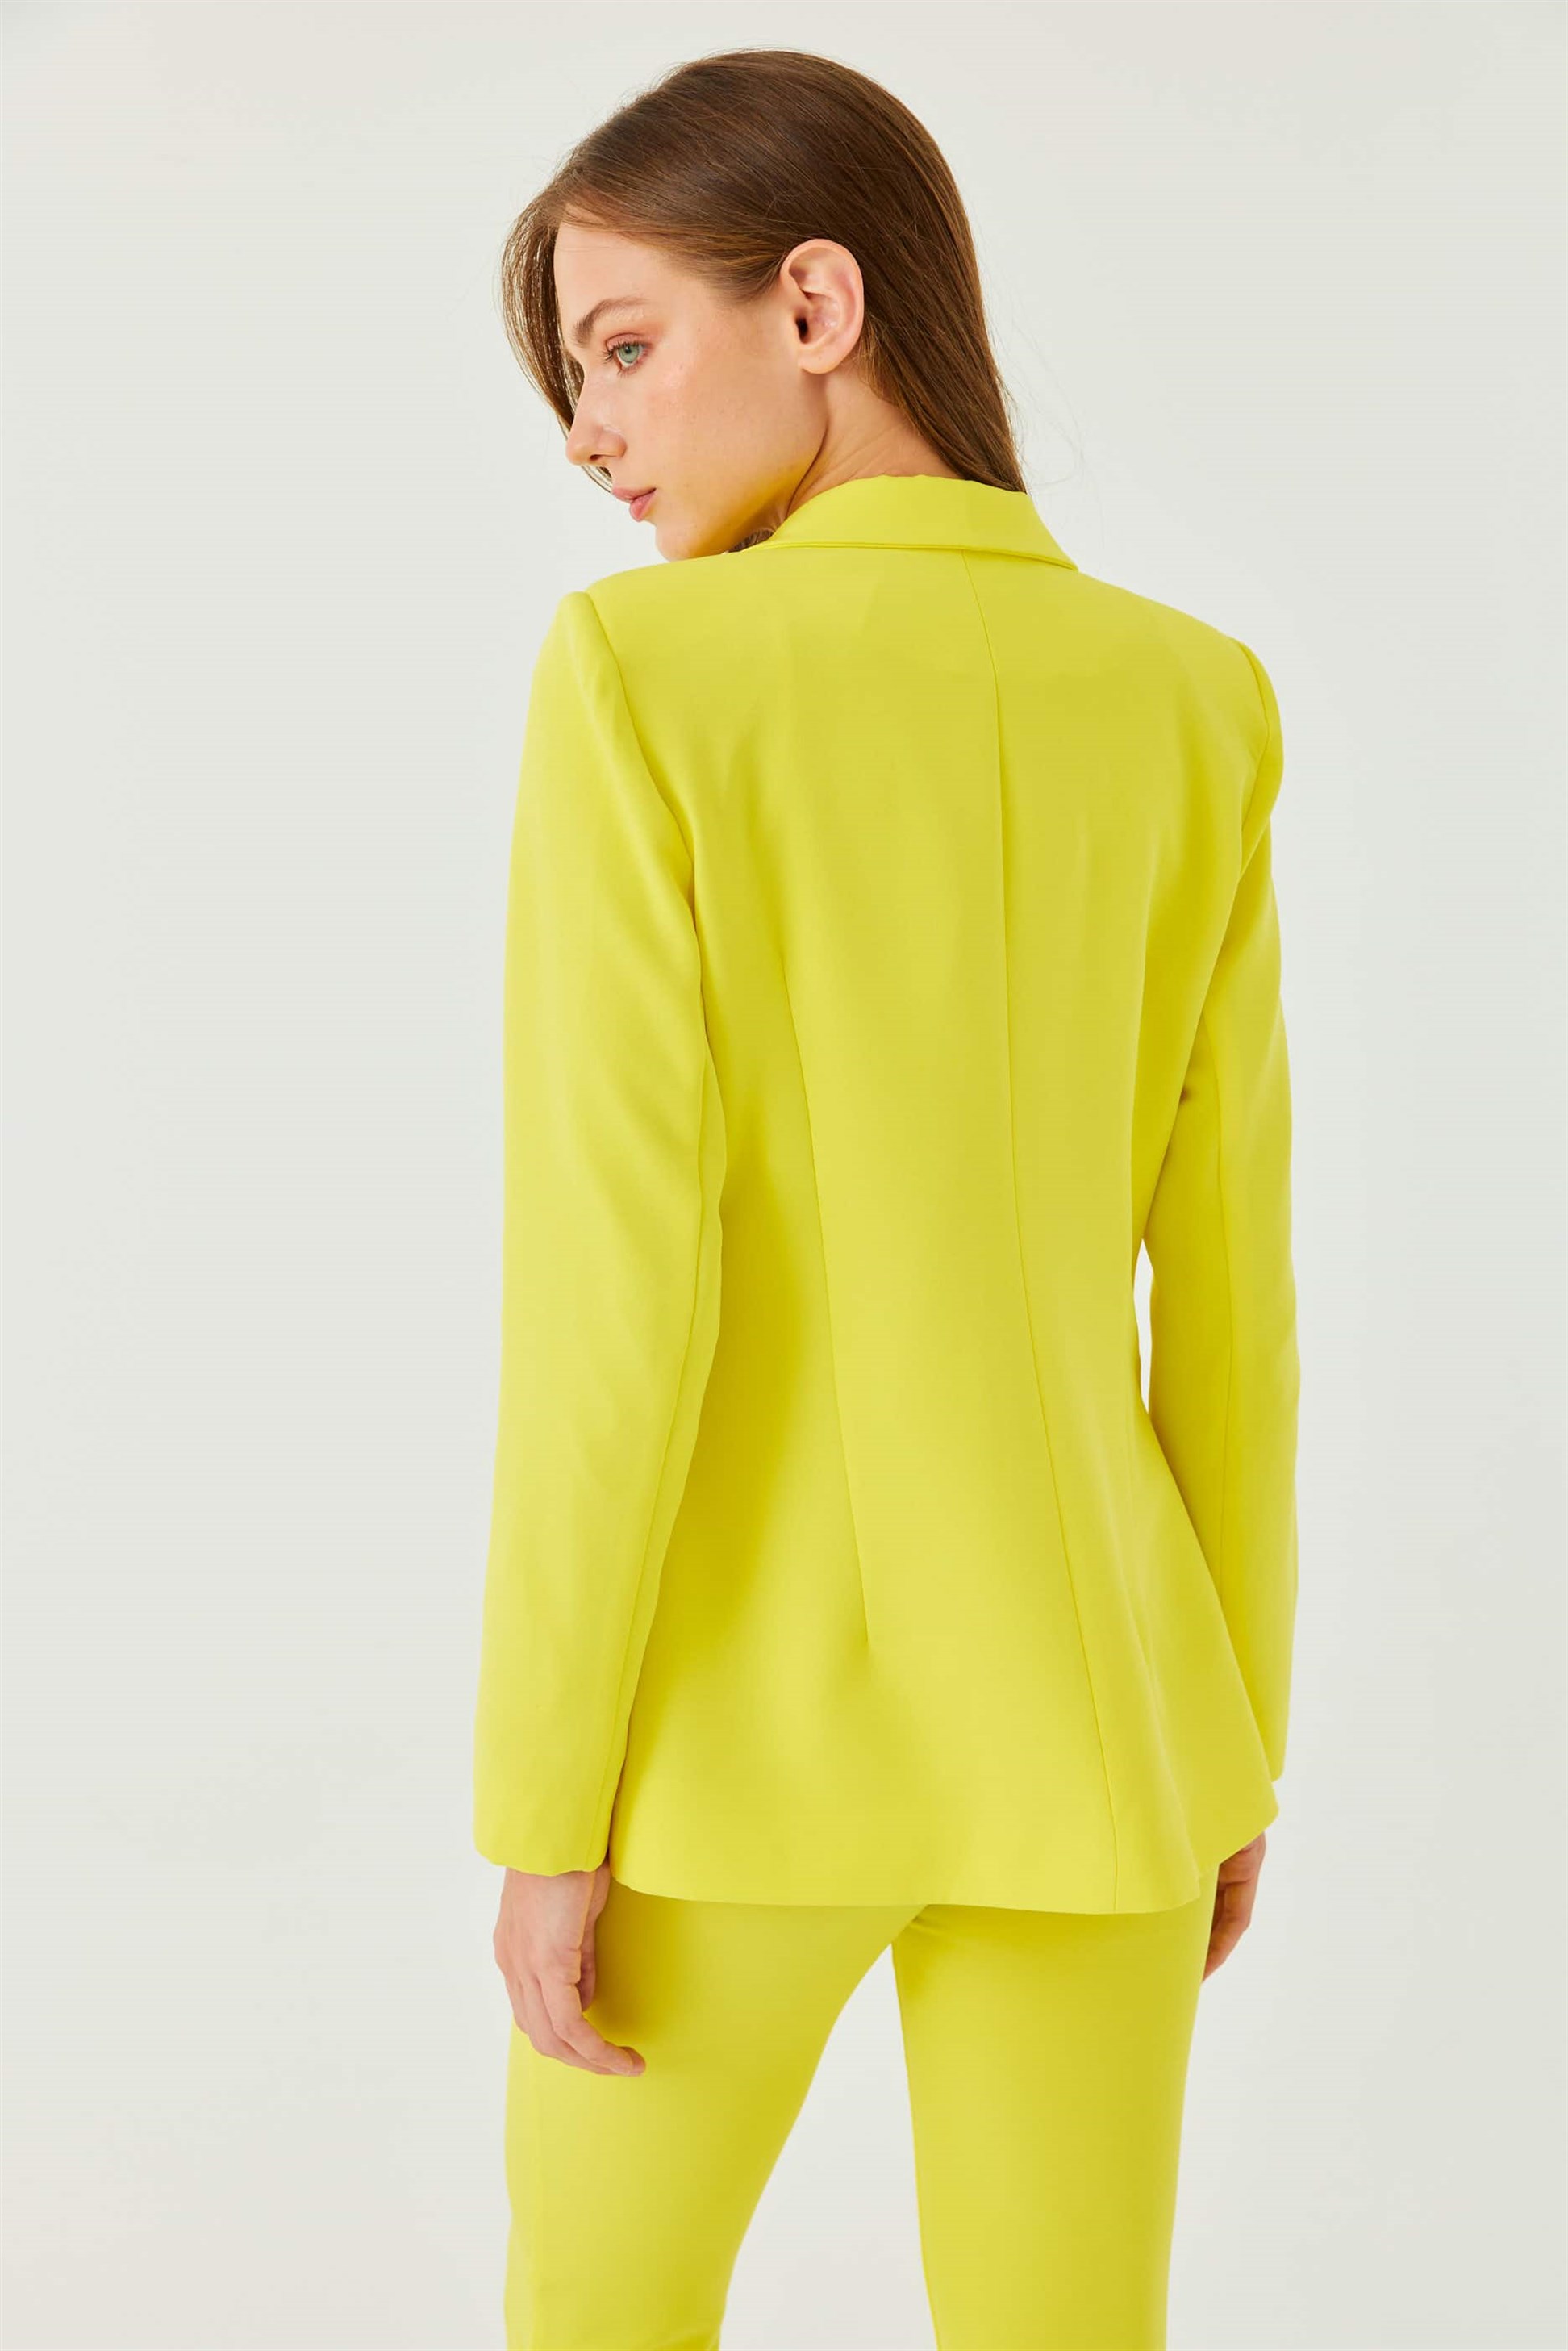 Vatkalı Blazer Neon Sarı Kadın Ceket | Tuba Butik